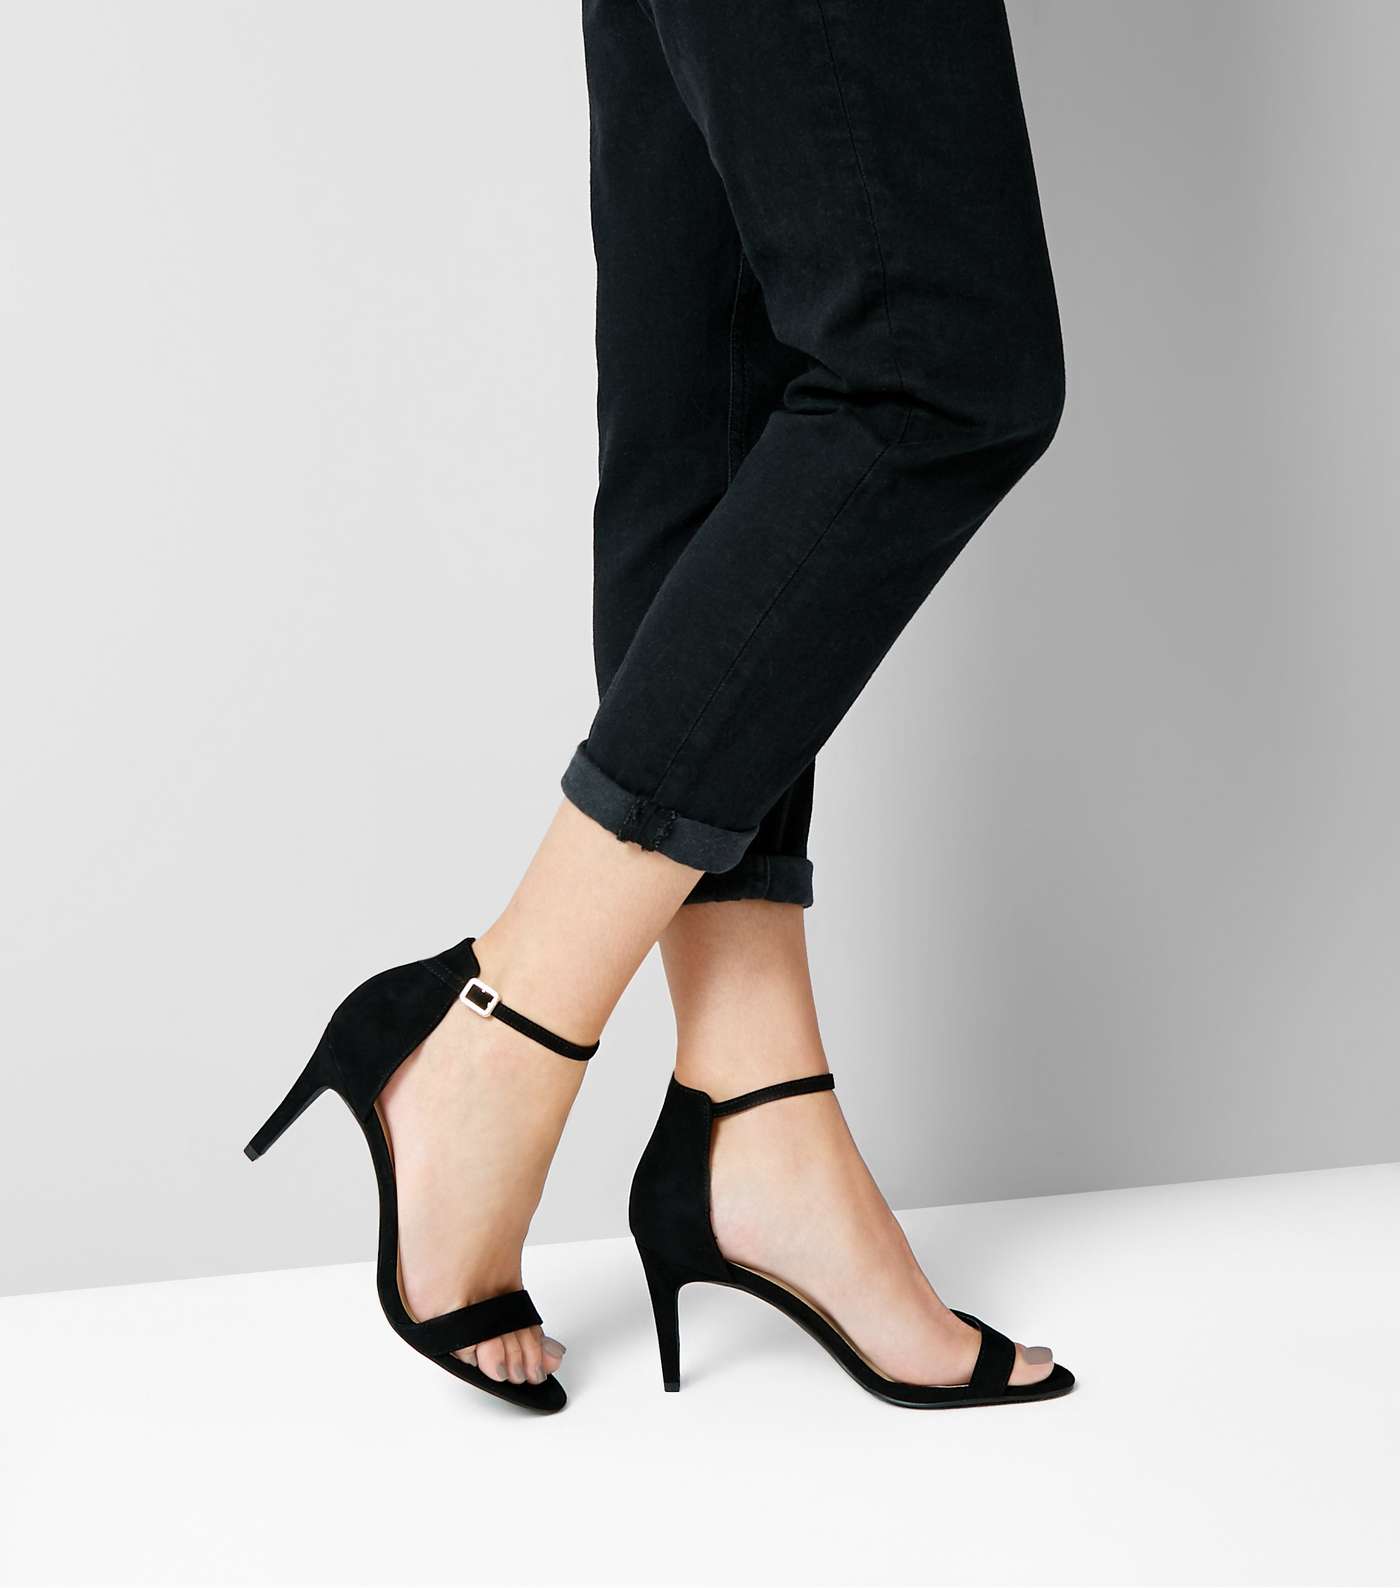 Black Suedette Stiletto Heeled Sandals Image 3